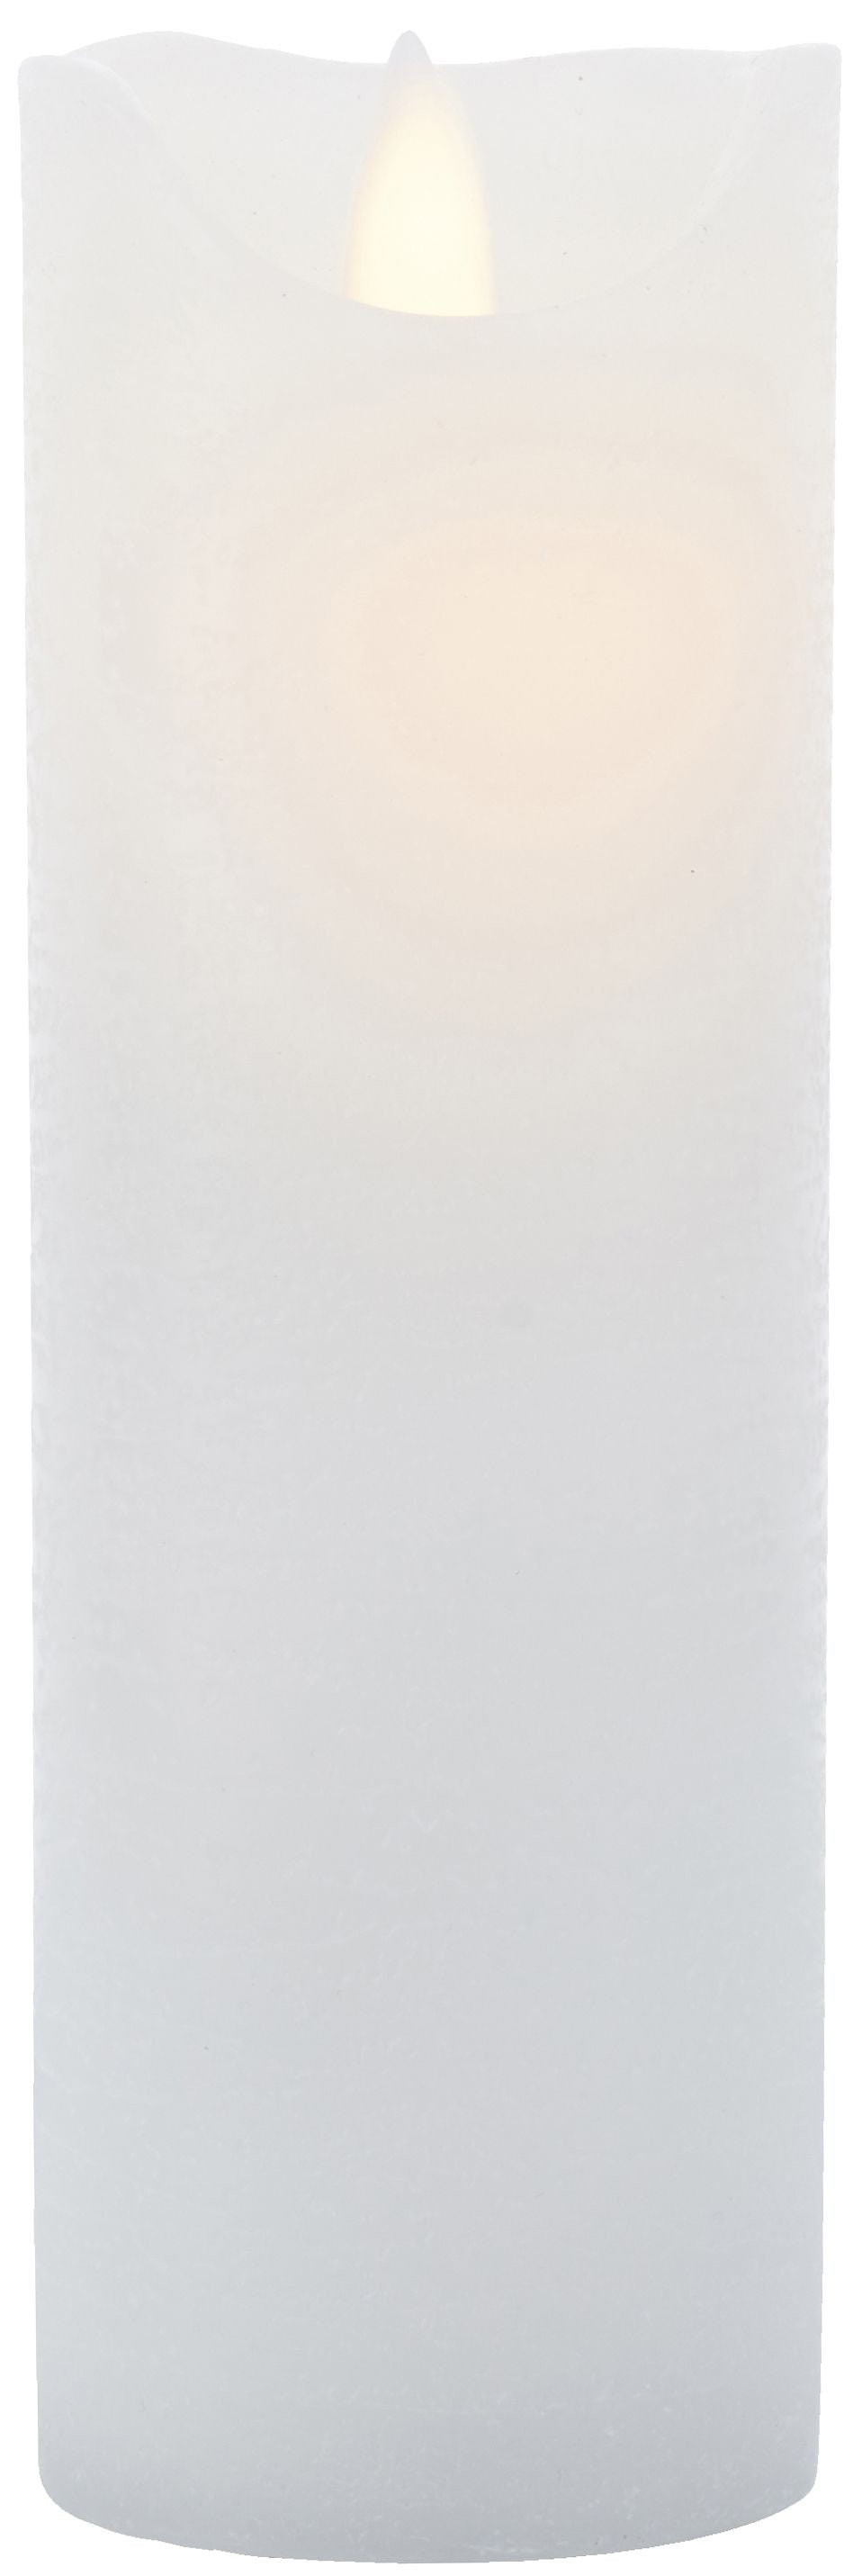 Sirius Sara wiederaufladbare LED -Kerzen weiß, Ø7,5x H20CM